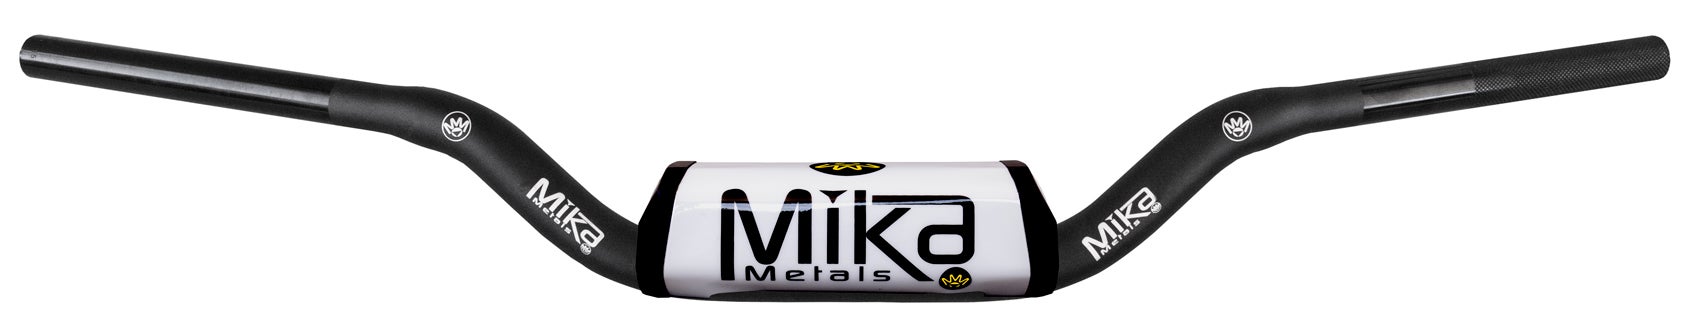 MIKA Metals の大径ハンドルバーが市場の他のバーと違う特徴とその 